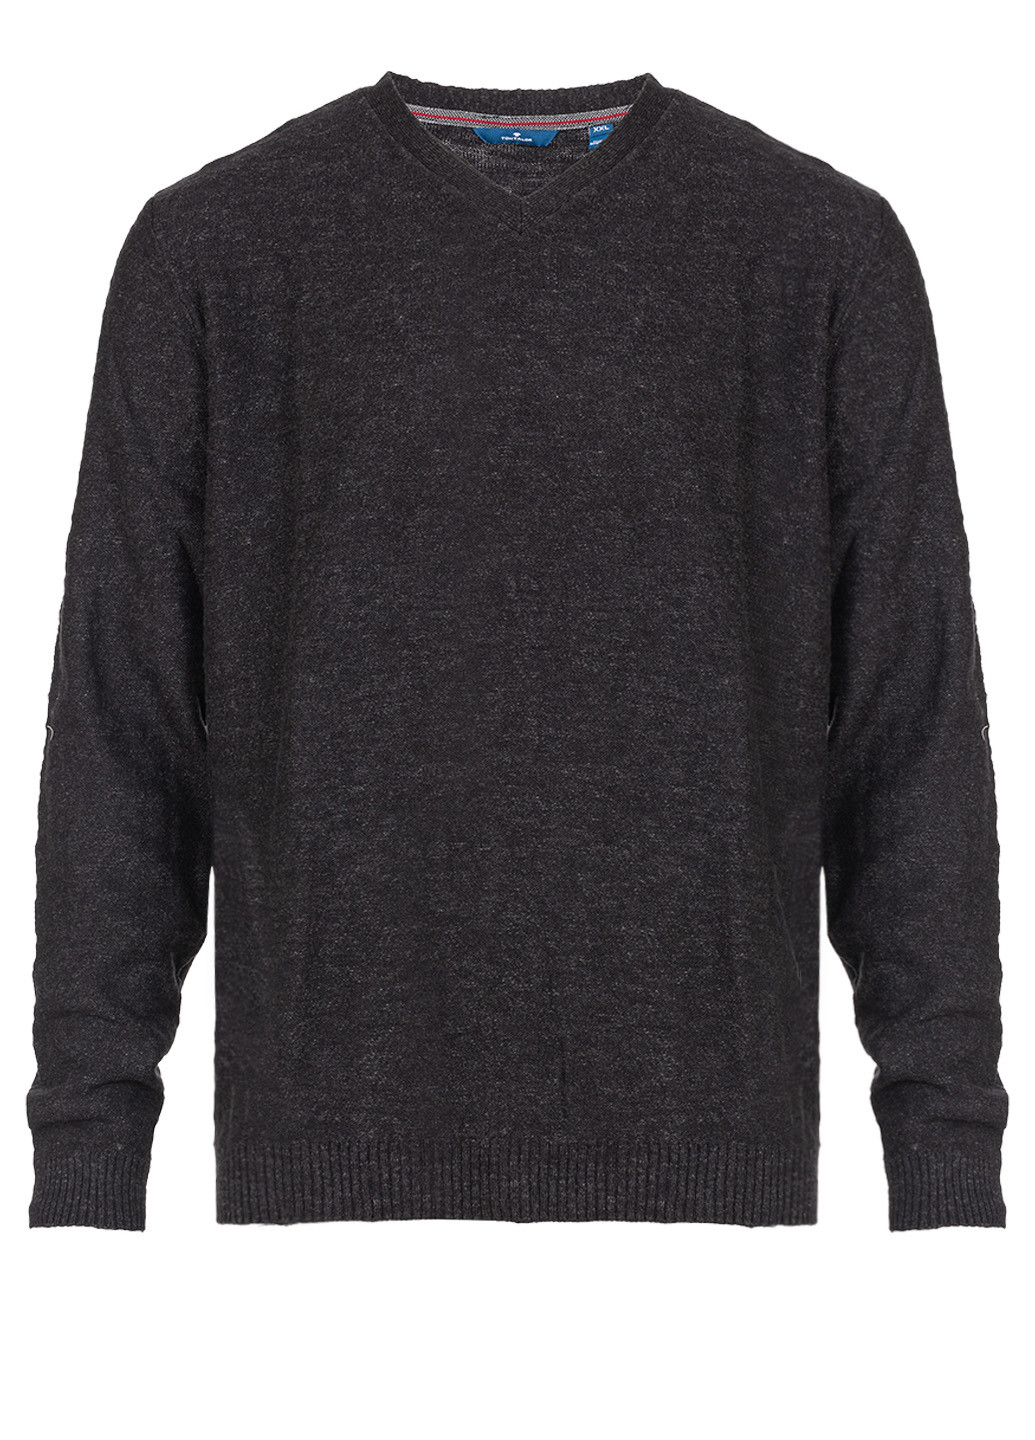 Графитовый демисезонный мужской графитовый свитер пуловер пуловер Tom Tailor